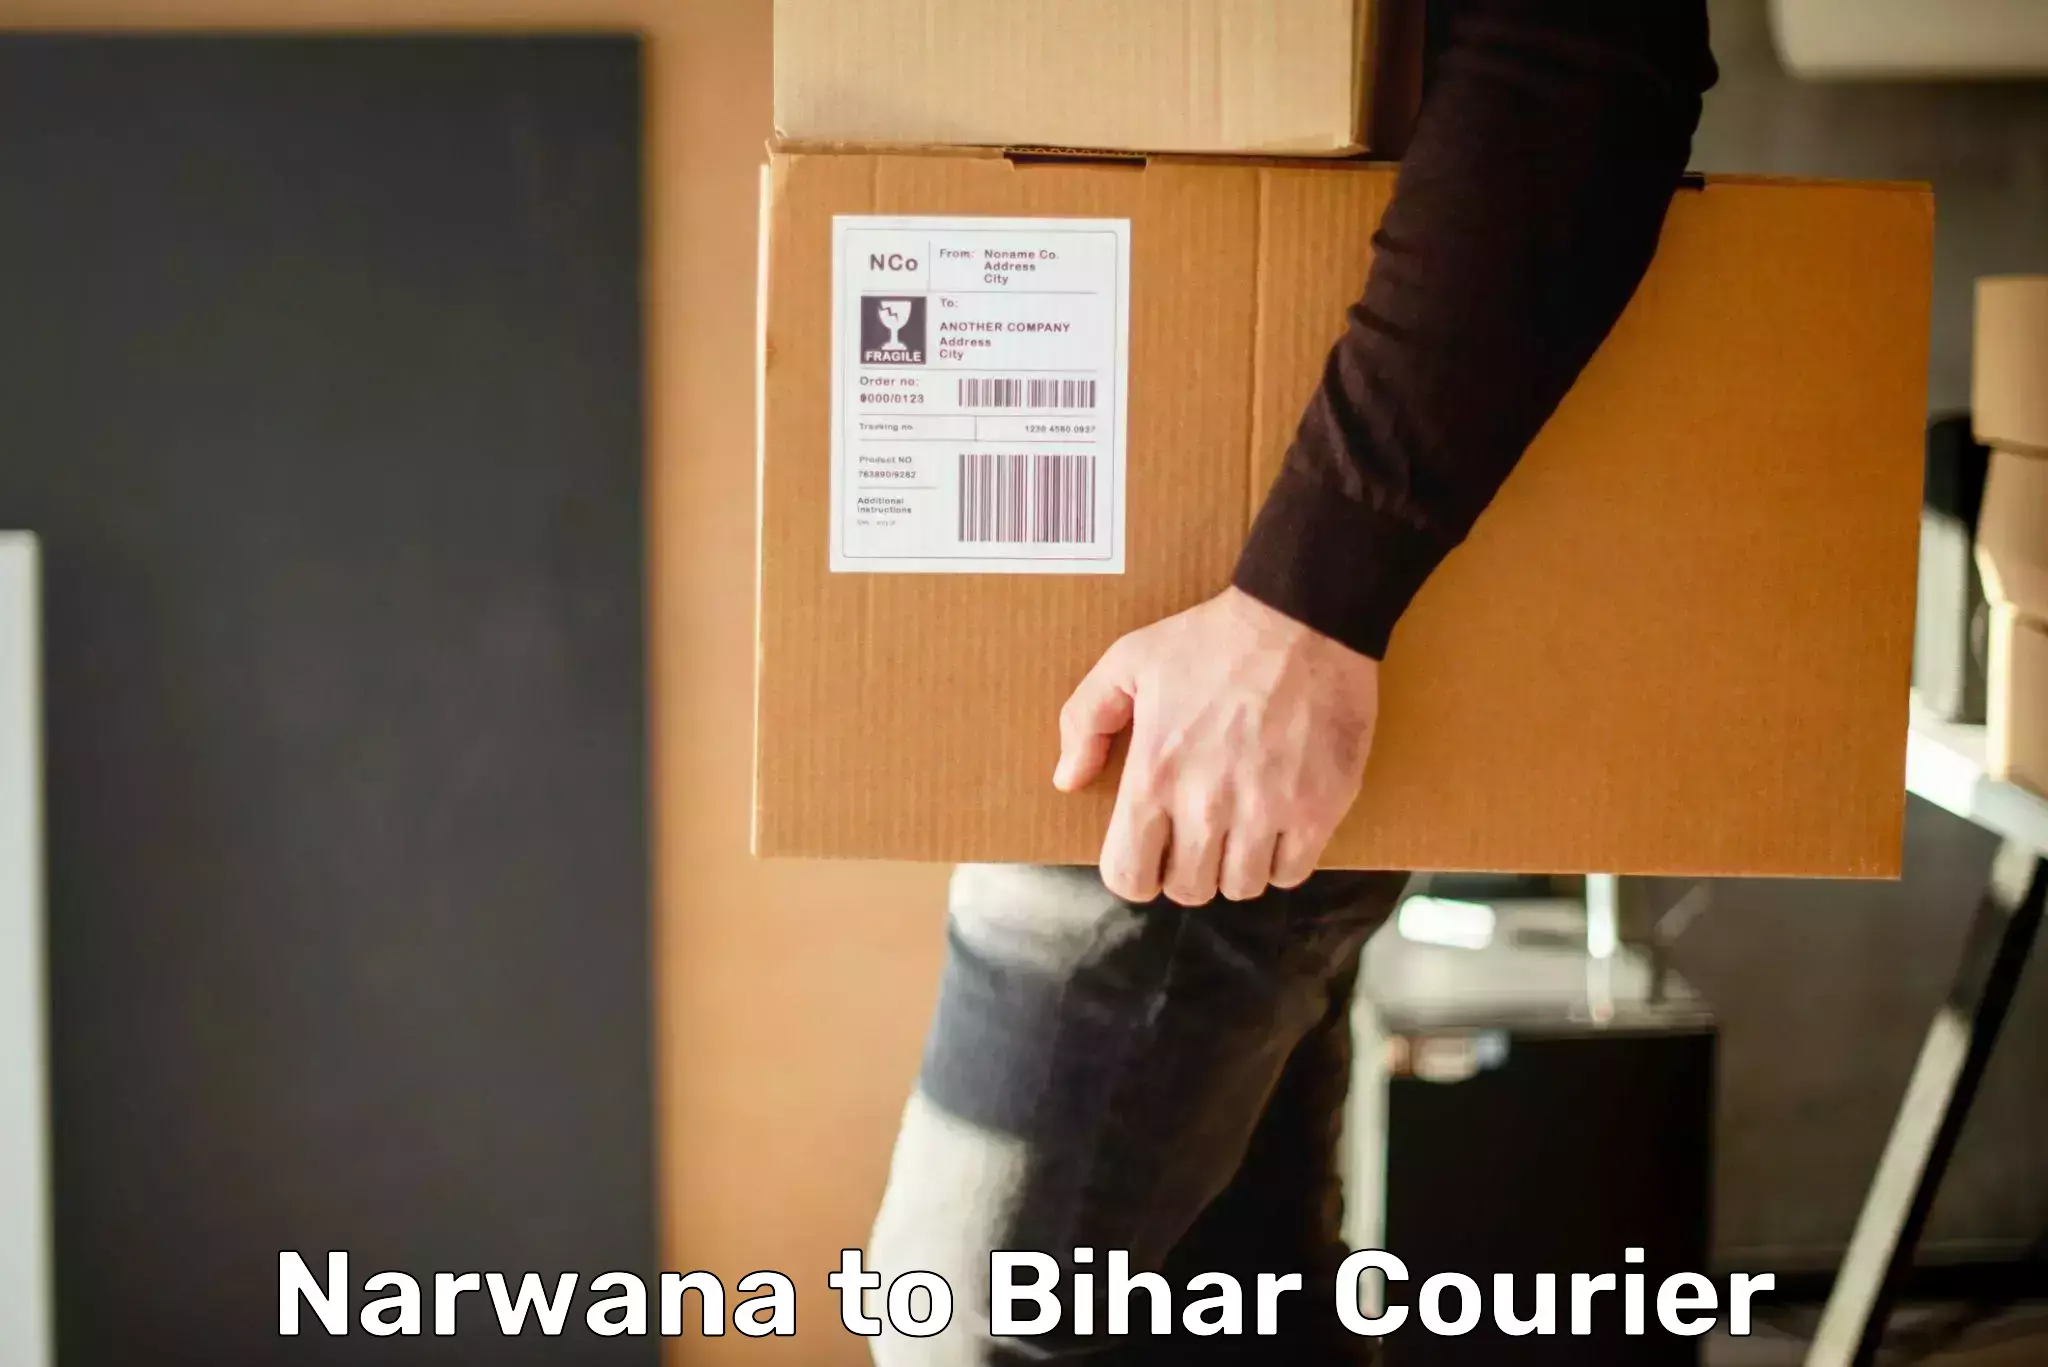 Cargo delivery service Narwana to Dhaka